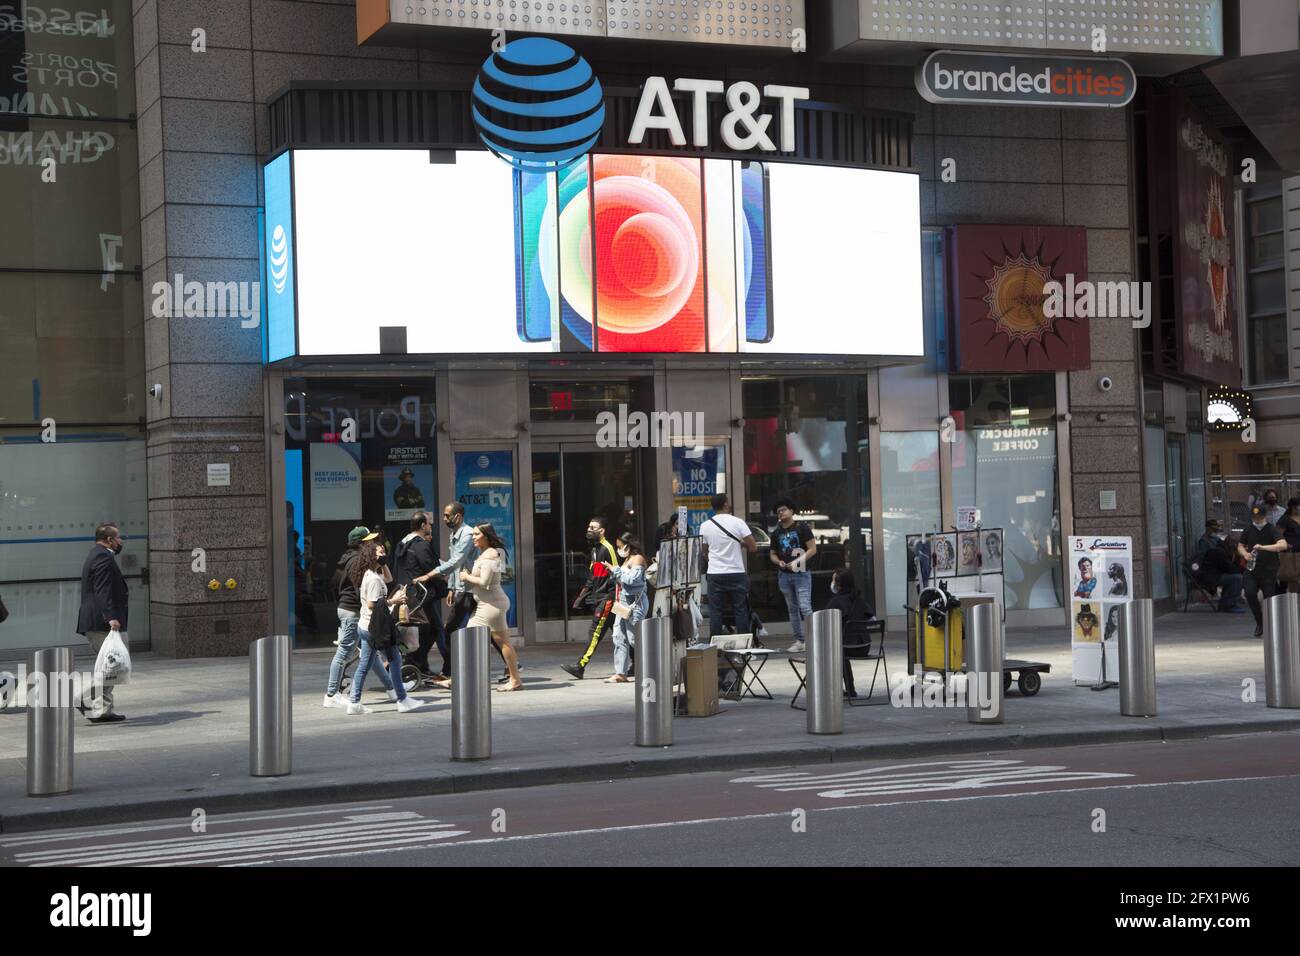 Viele große Banken, große Technologieunternehmen und andere dominante Unternehmen sind im Times Square-Viertel von Midtown Manhattan auffällig präsent. Stockfoto